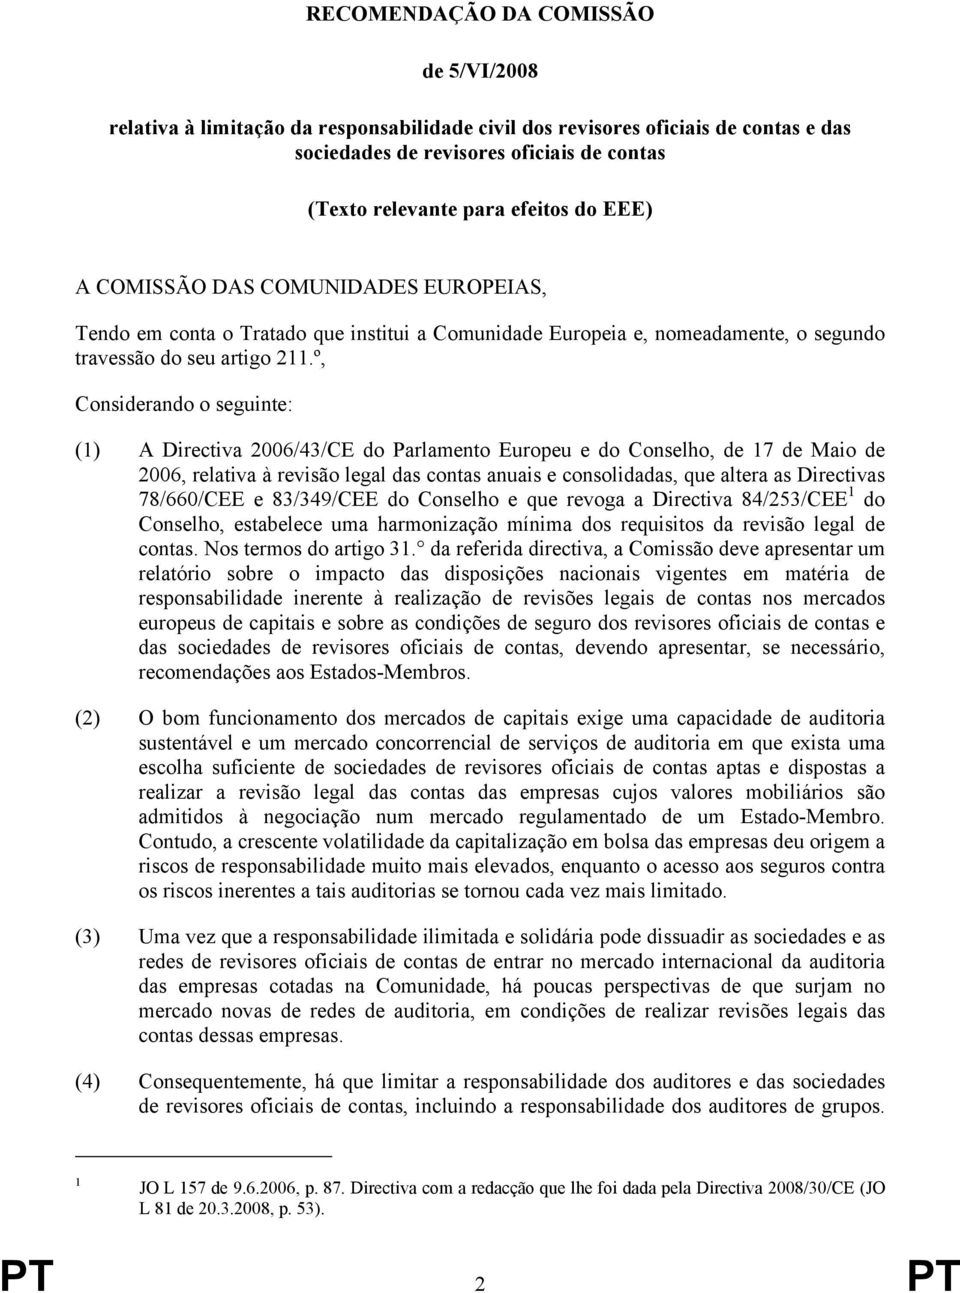 º, Considerando o seguinte: (1) A Directiva 2006/43/CE do Parlamento Europeu e do Conselho, de 17 de Maio de 2006, relativa à revisão legal das contas anuais e consolidadas, que altera as Directivas